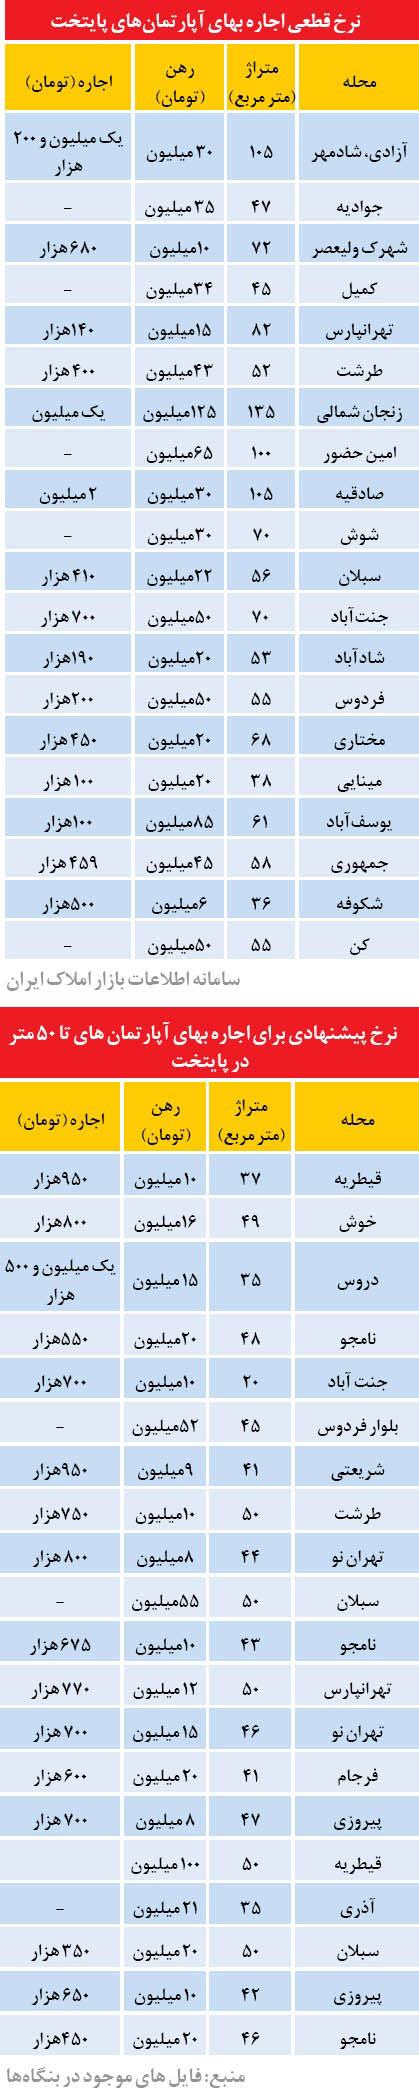 قیمت اجاره مسکن در نقاط مختلف تهران